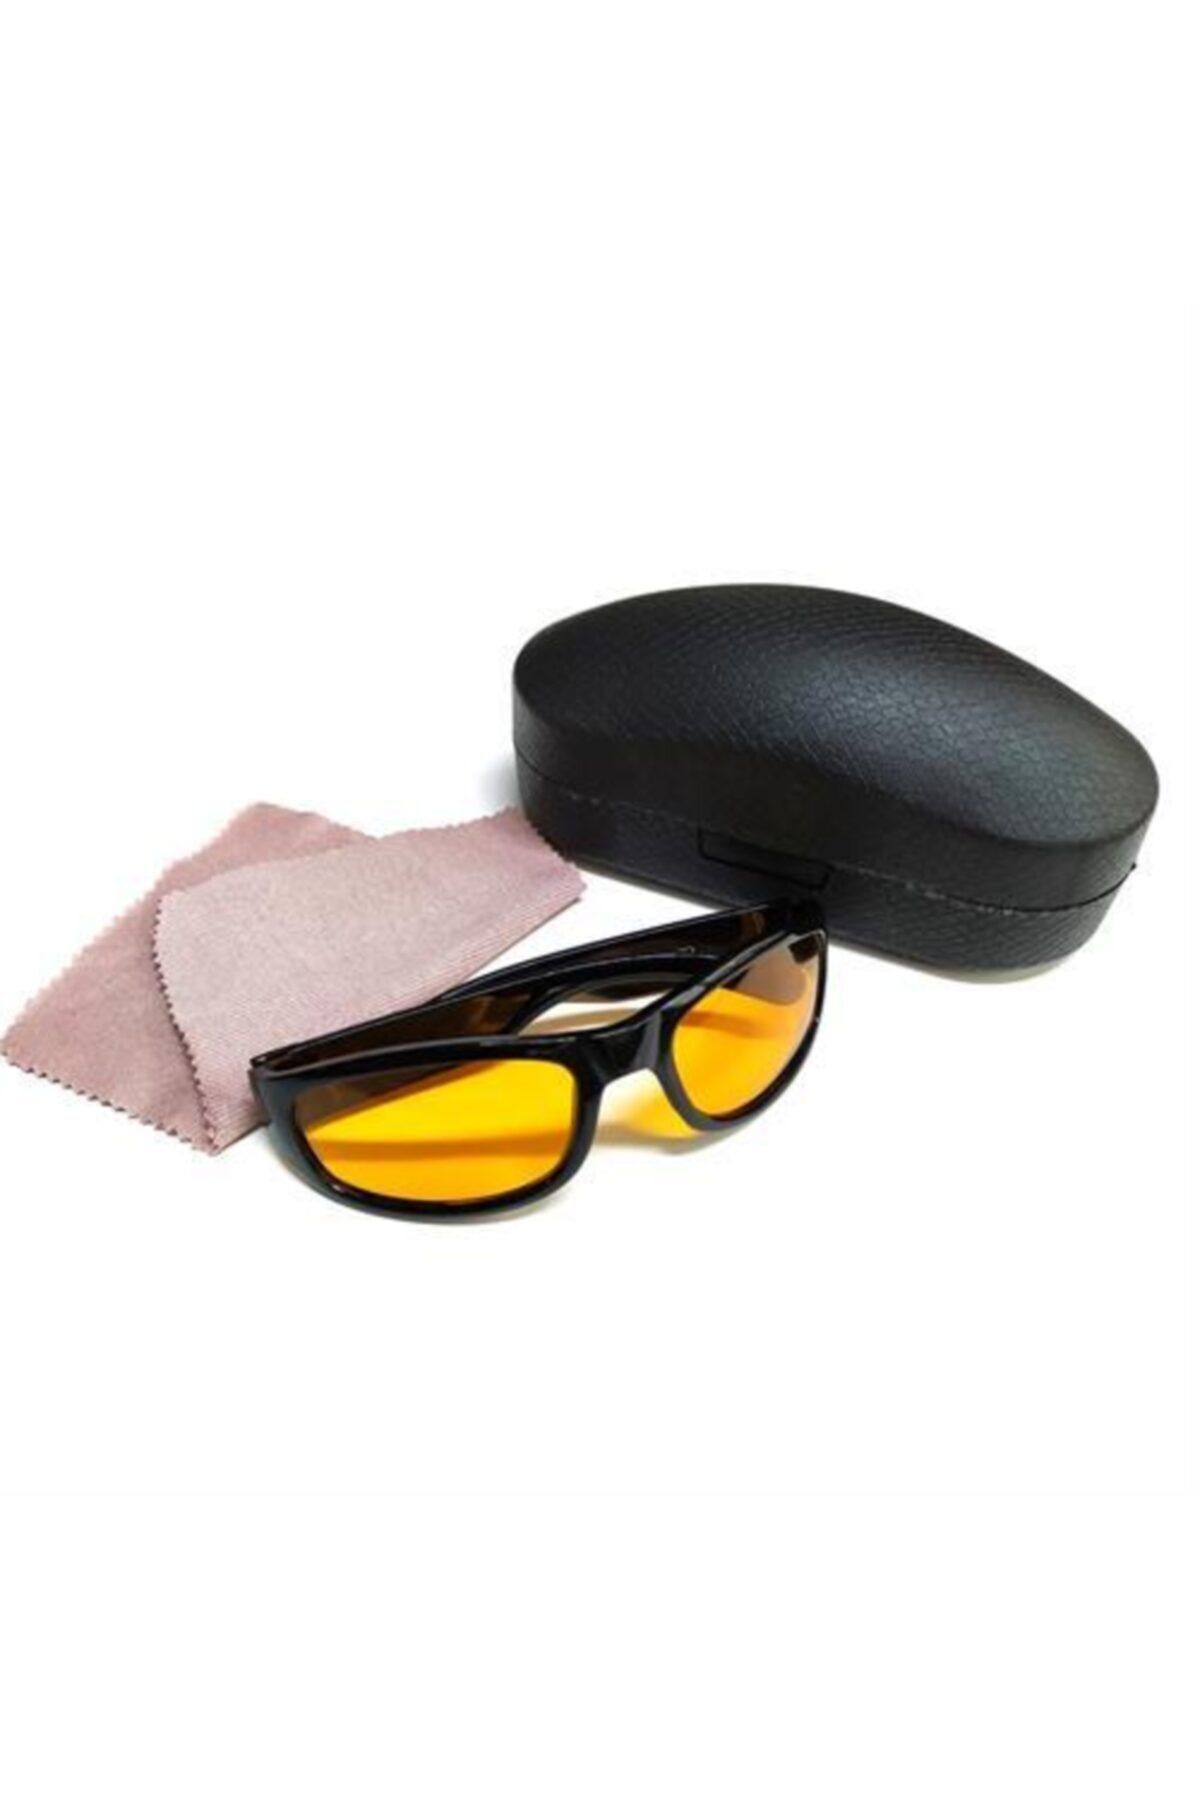 ModaCar Gece Sürüş Ve Sis Gözlüğü Özel Kutulu 427555 6 Lı Indirimli Paket